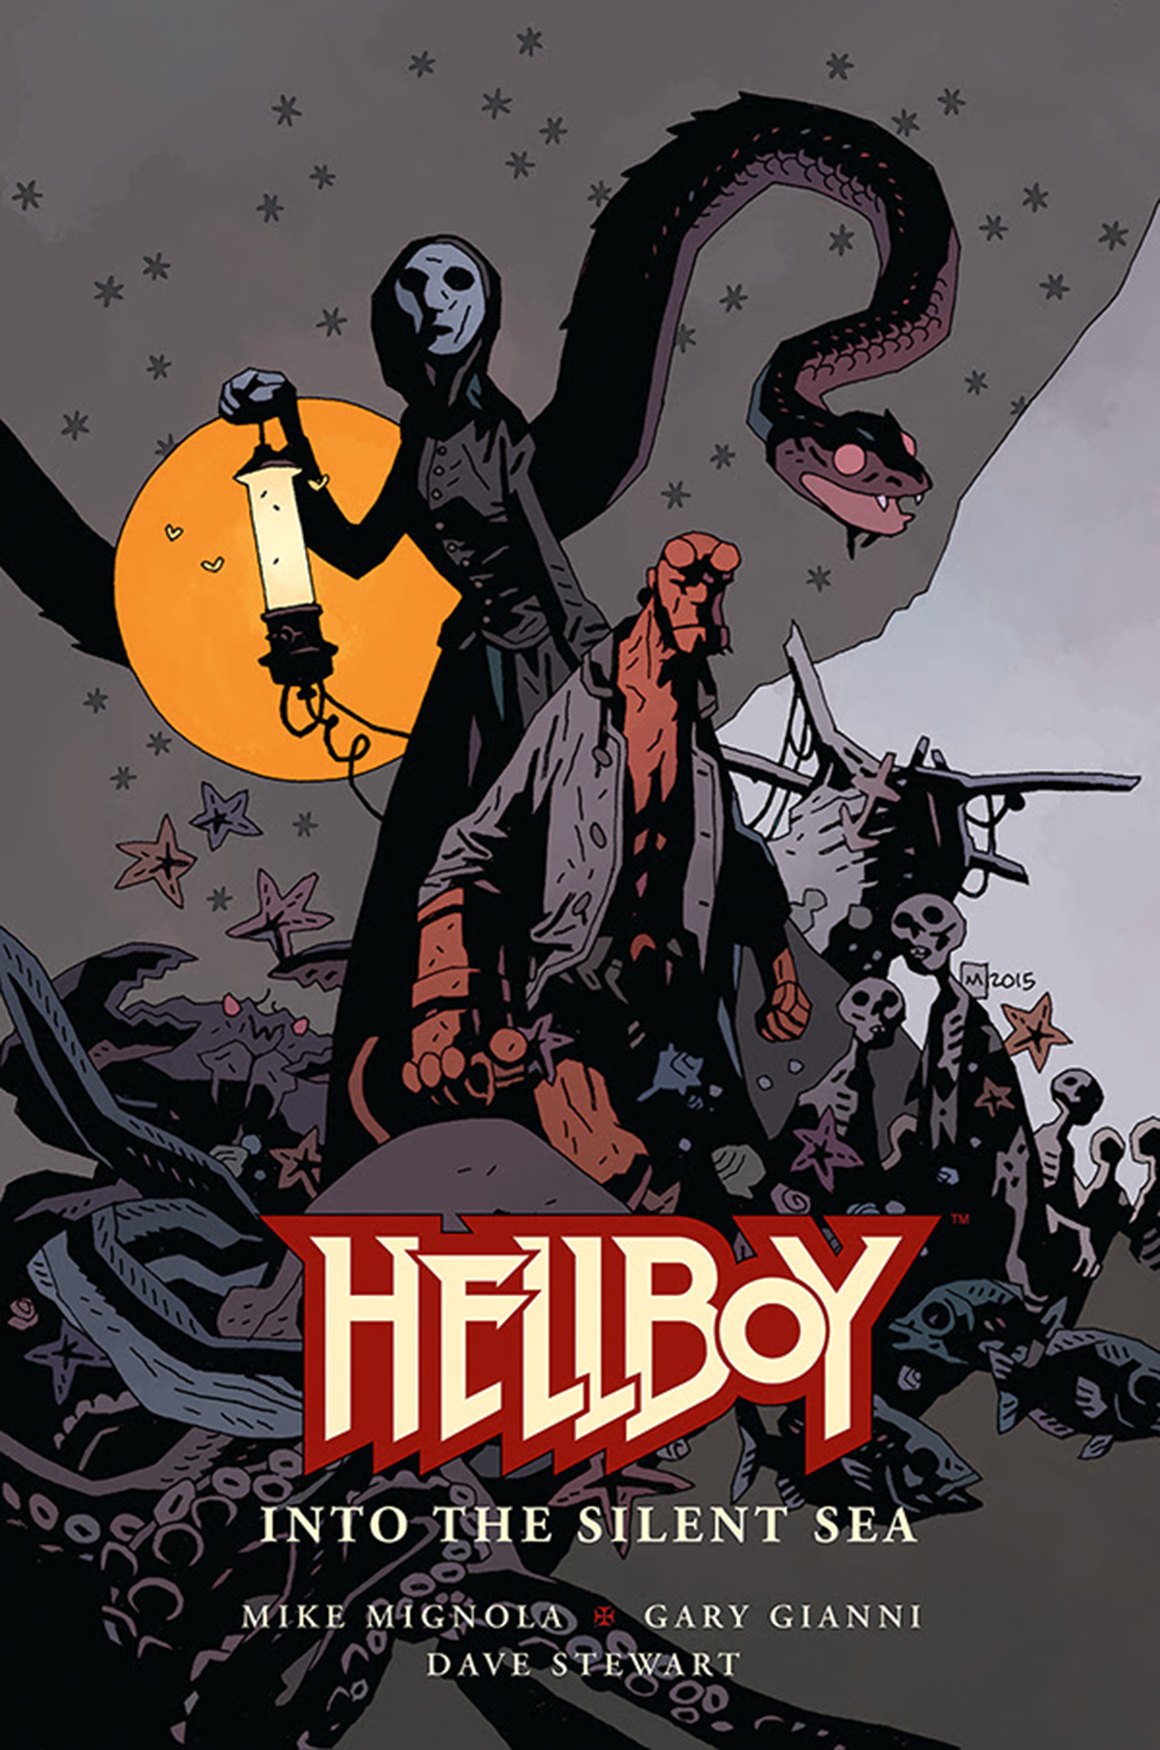 La copertina della nuova graphic nove di Mike Mignola, Hellboy: Into the Silent Sea